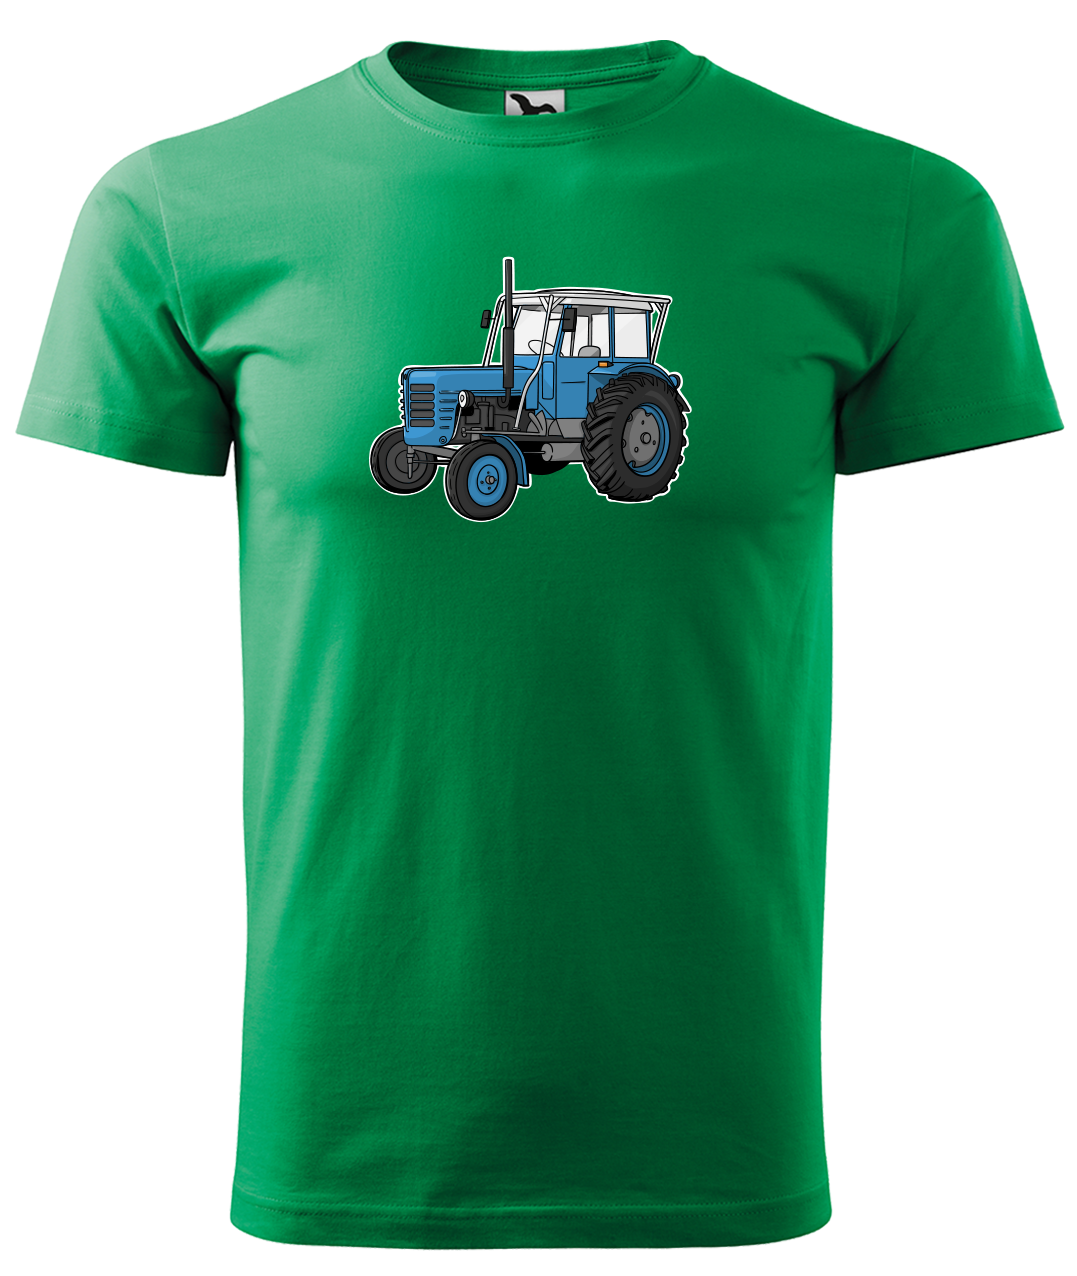 Dětské tričko s traktorem - Starý traktor Velikost: 4 roky / 110 cm, Barva: Středně zelená (16)